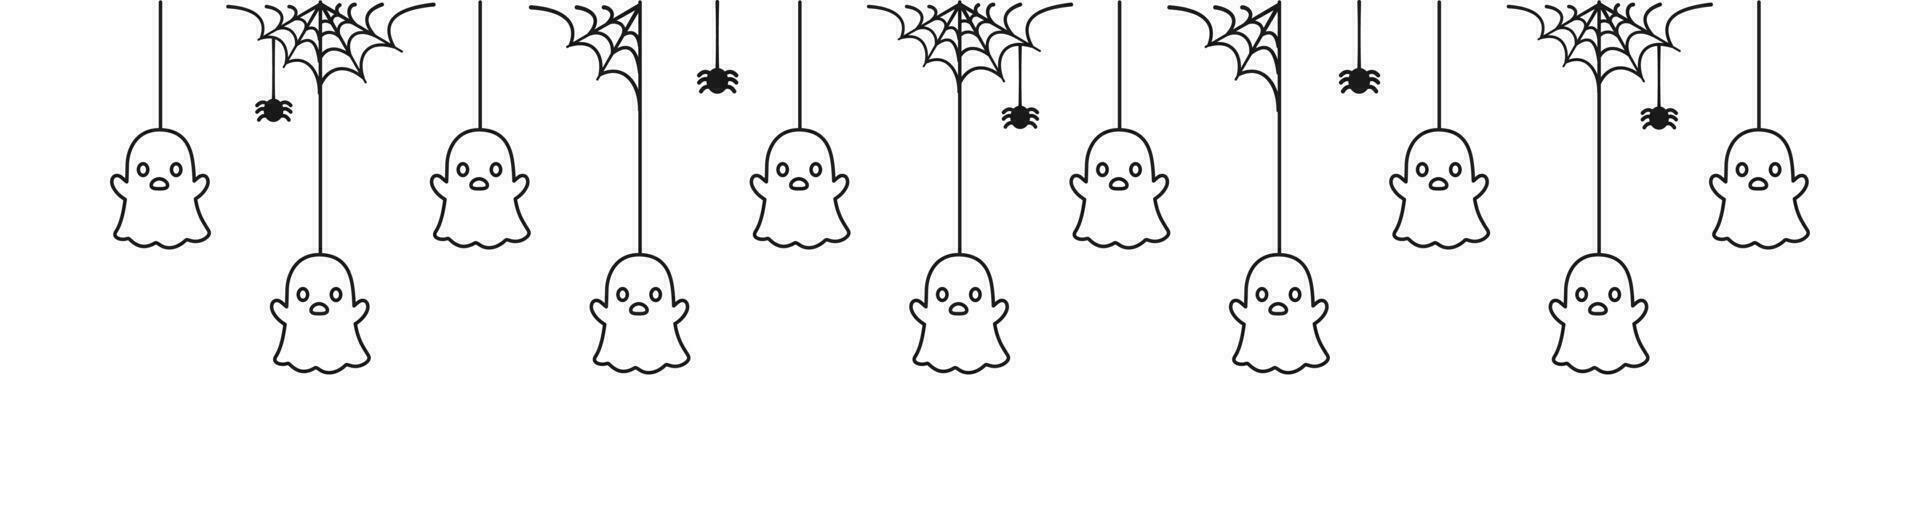 gelukkig halloween banier grens met geest hangende van spin webben tekening schets. spookachtig ornamenten decoratie vector illustratie, truc of traktatie partij uitnodiging